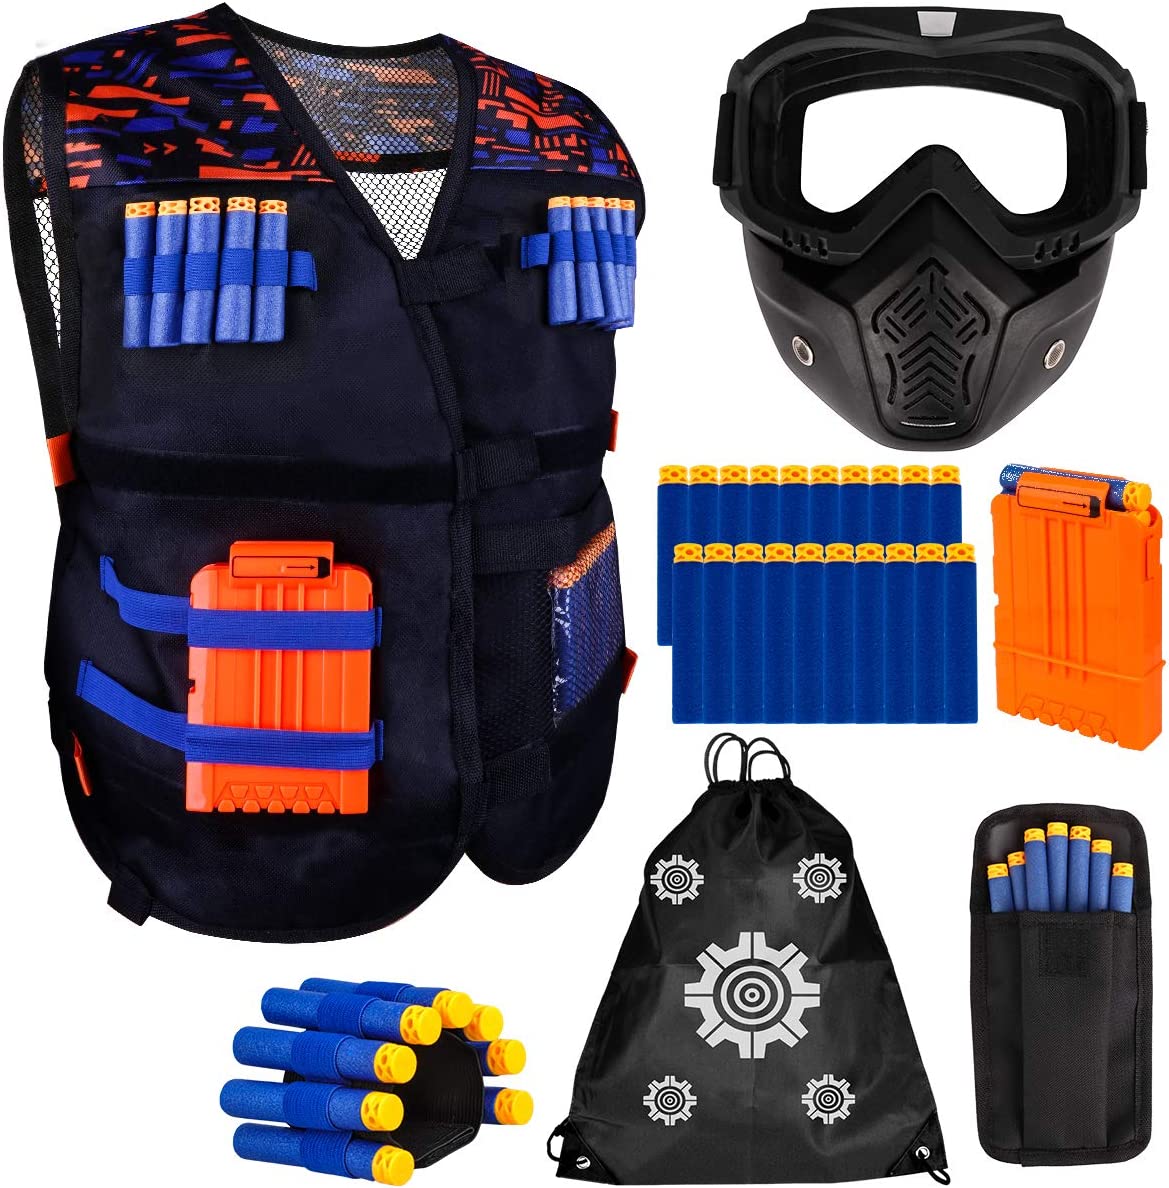 Kit de chaleco táctico para niño, para pistolas Nerf N-Strike Elite Series, incluye máscara táctica desmontable para Nerf Rival, recarga de dardos, bolsa para dardos, clips de recarga y muñequera